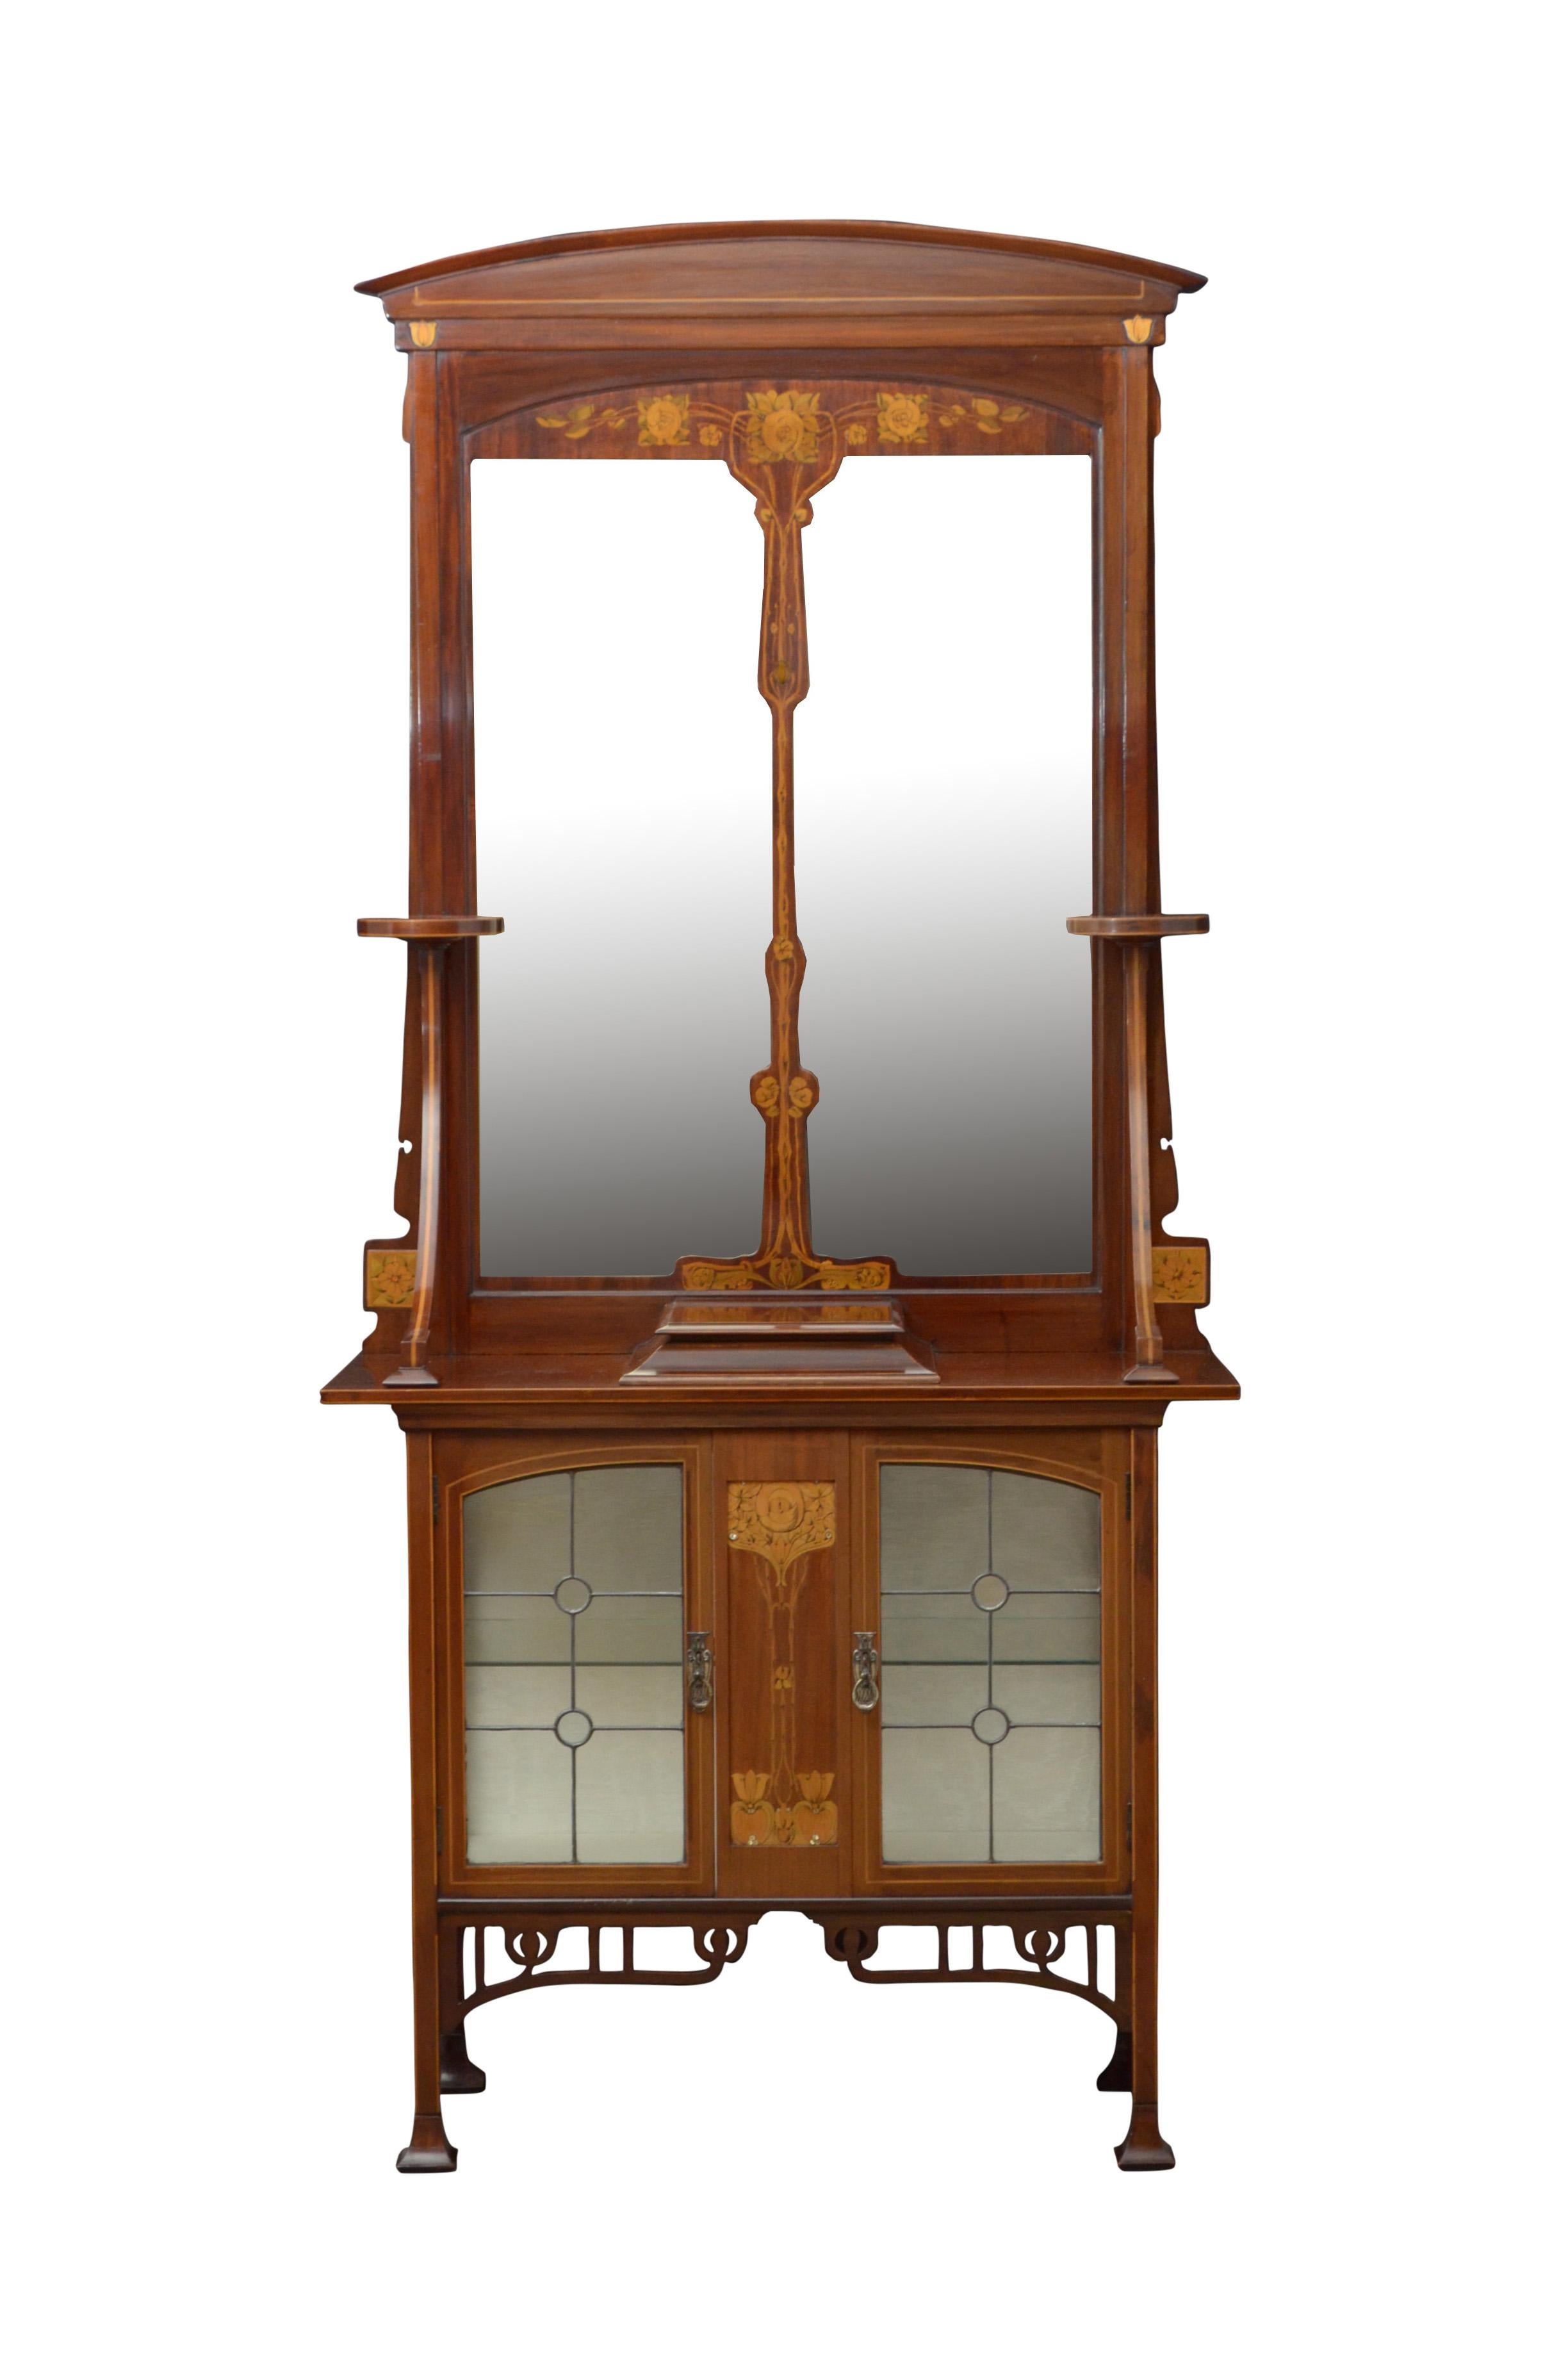 Zwei prächtige Jugendstilschränke aus Mahagoni und Intarsien mit Spiegeln.
Art Nouveau Mahagoni und Intarsien-Dielenschränke, die jeweils ein gewölbtes Wappen über einem geteilten Spiegel haben, der von einem Paar runder Halterungen gestützt wird.